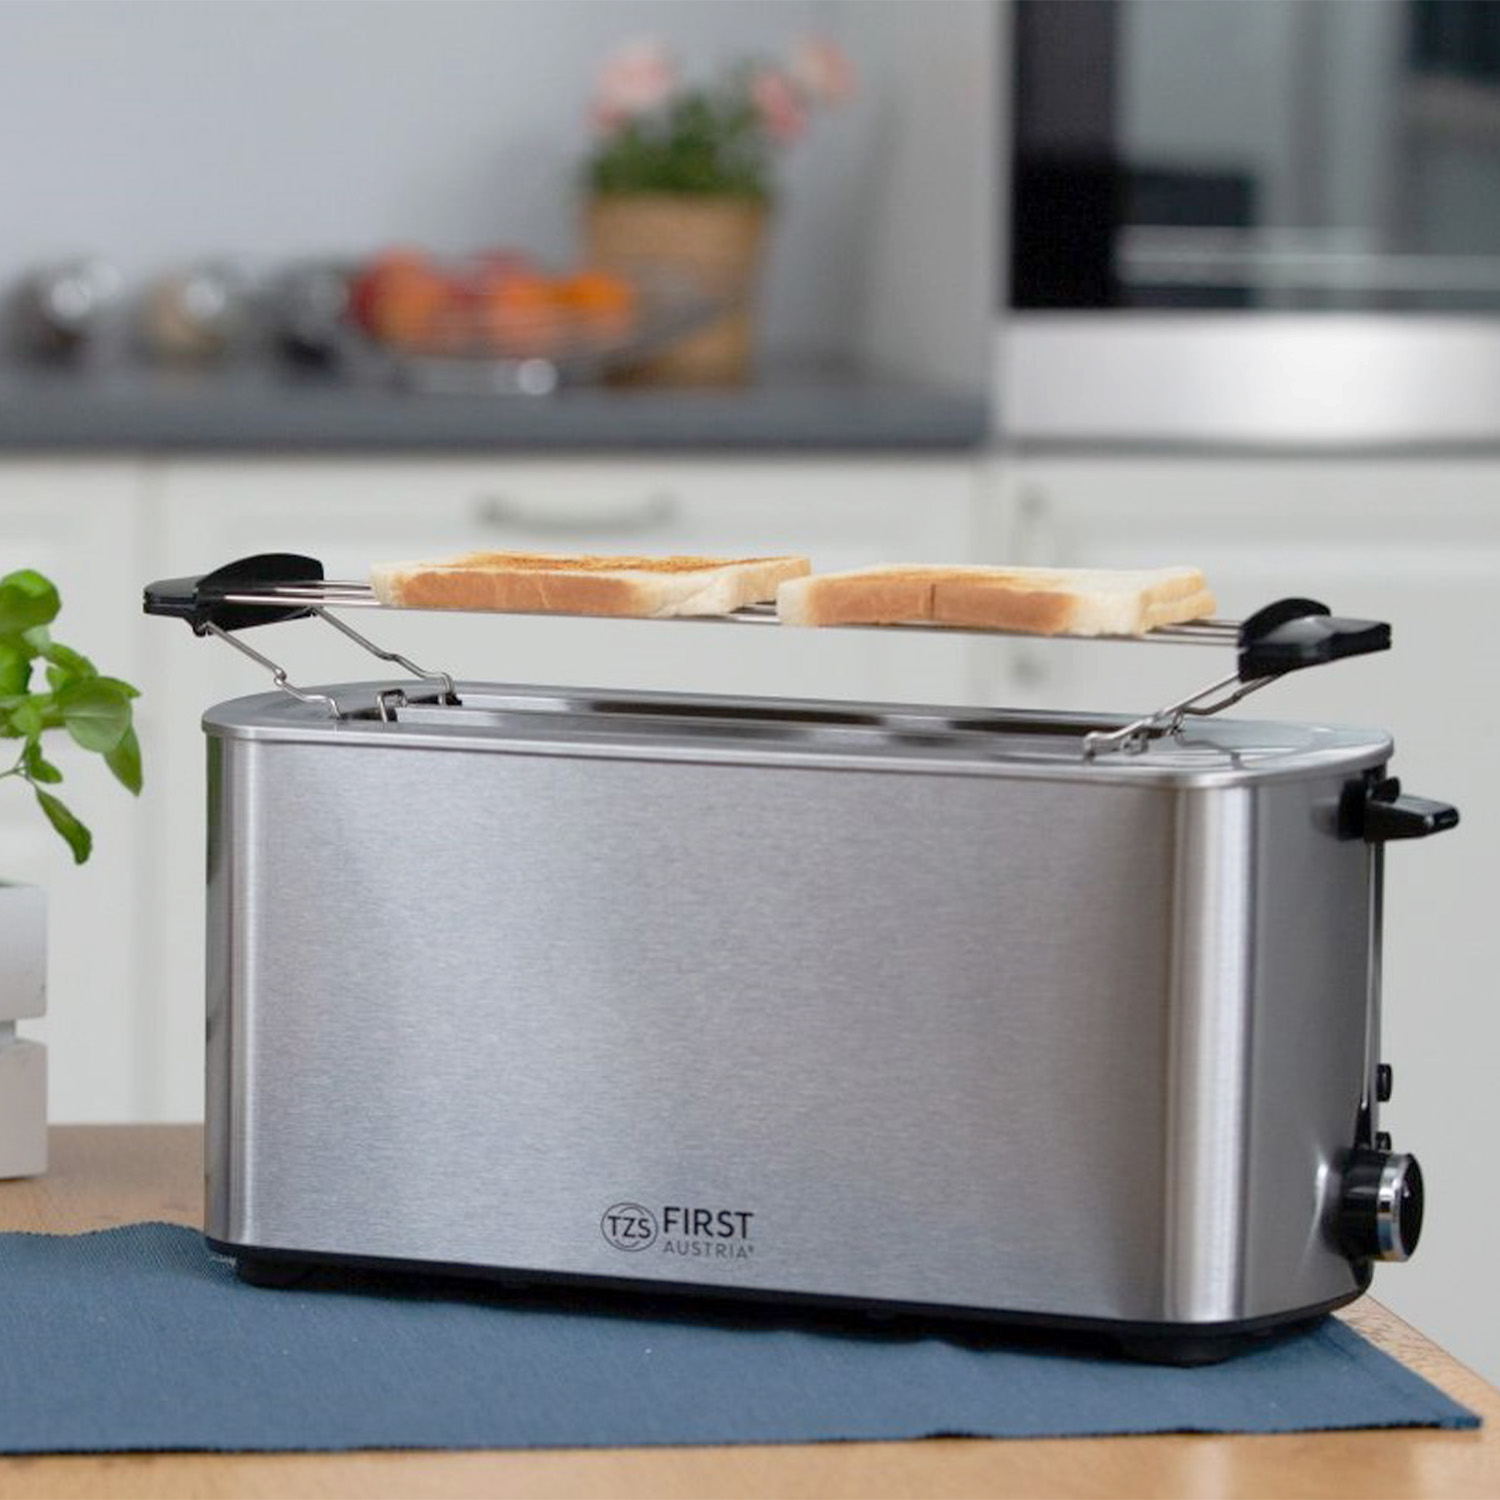 Toaster | 4 Scheiben | 1400W | Edelstahl